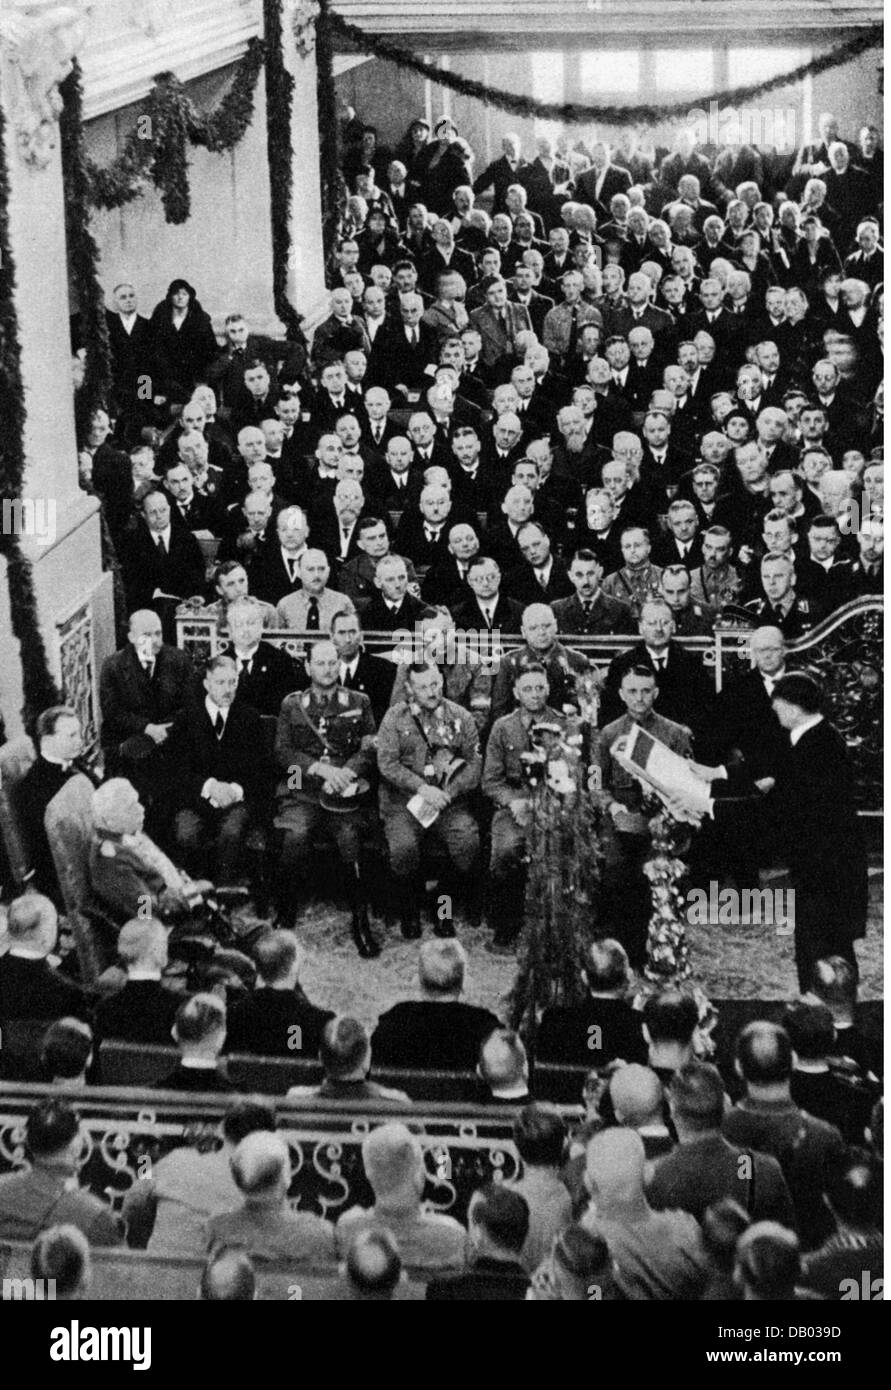 Nationalsozialismus, Politik, 'Tag von Potsdam', Kanzler Adolf Hitler hält eine Rede vor Präsident Paul von Hindenburg, Garnisonskirche, 21.3.1933, Zusatzrechte-Clearences-nicht vorhanden Stockfoto